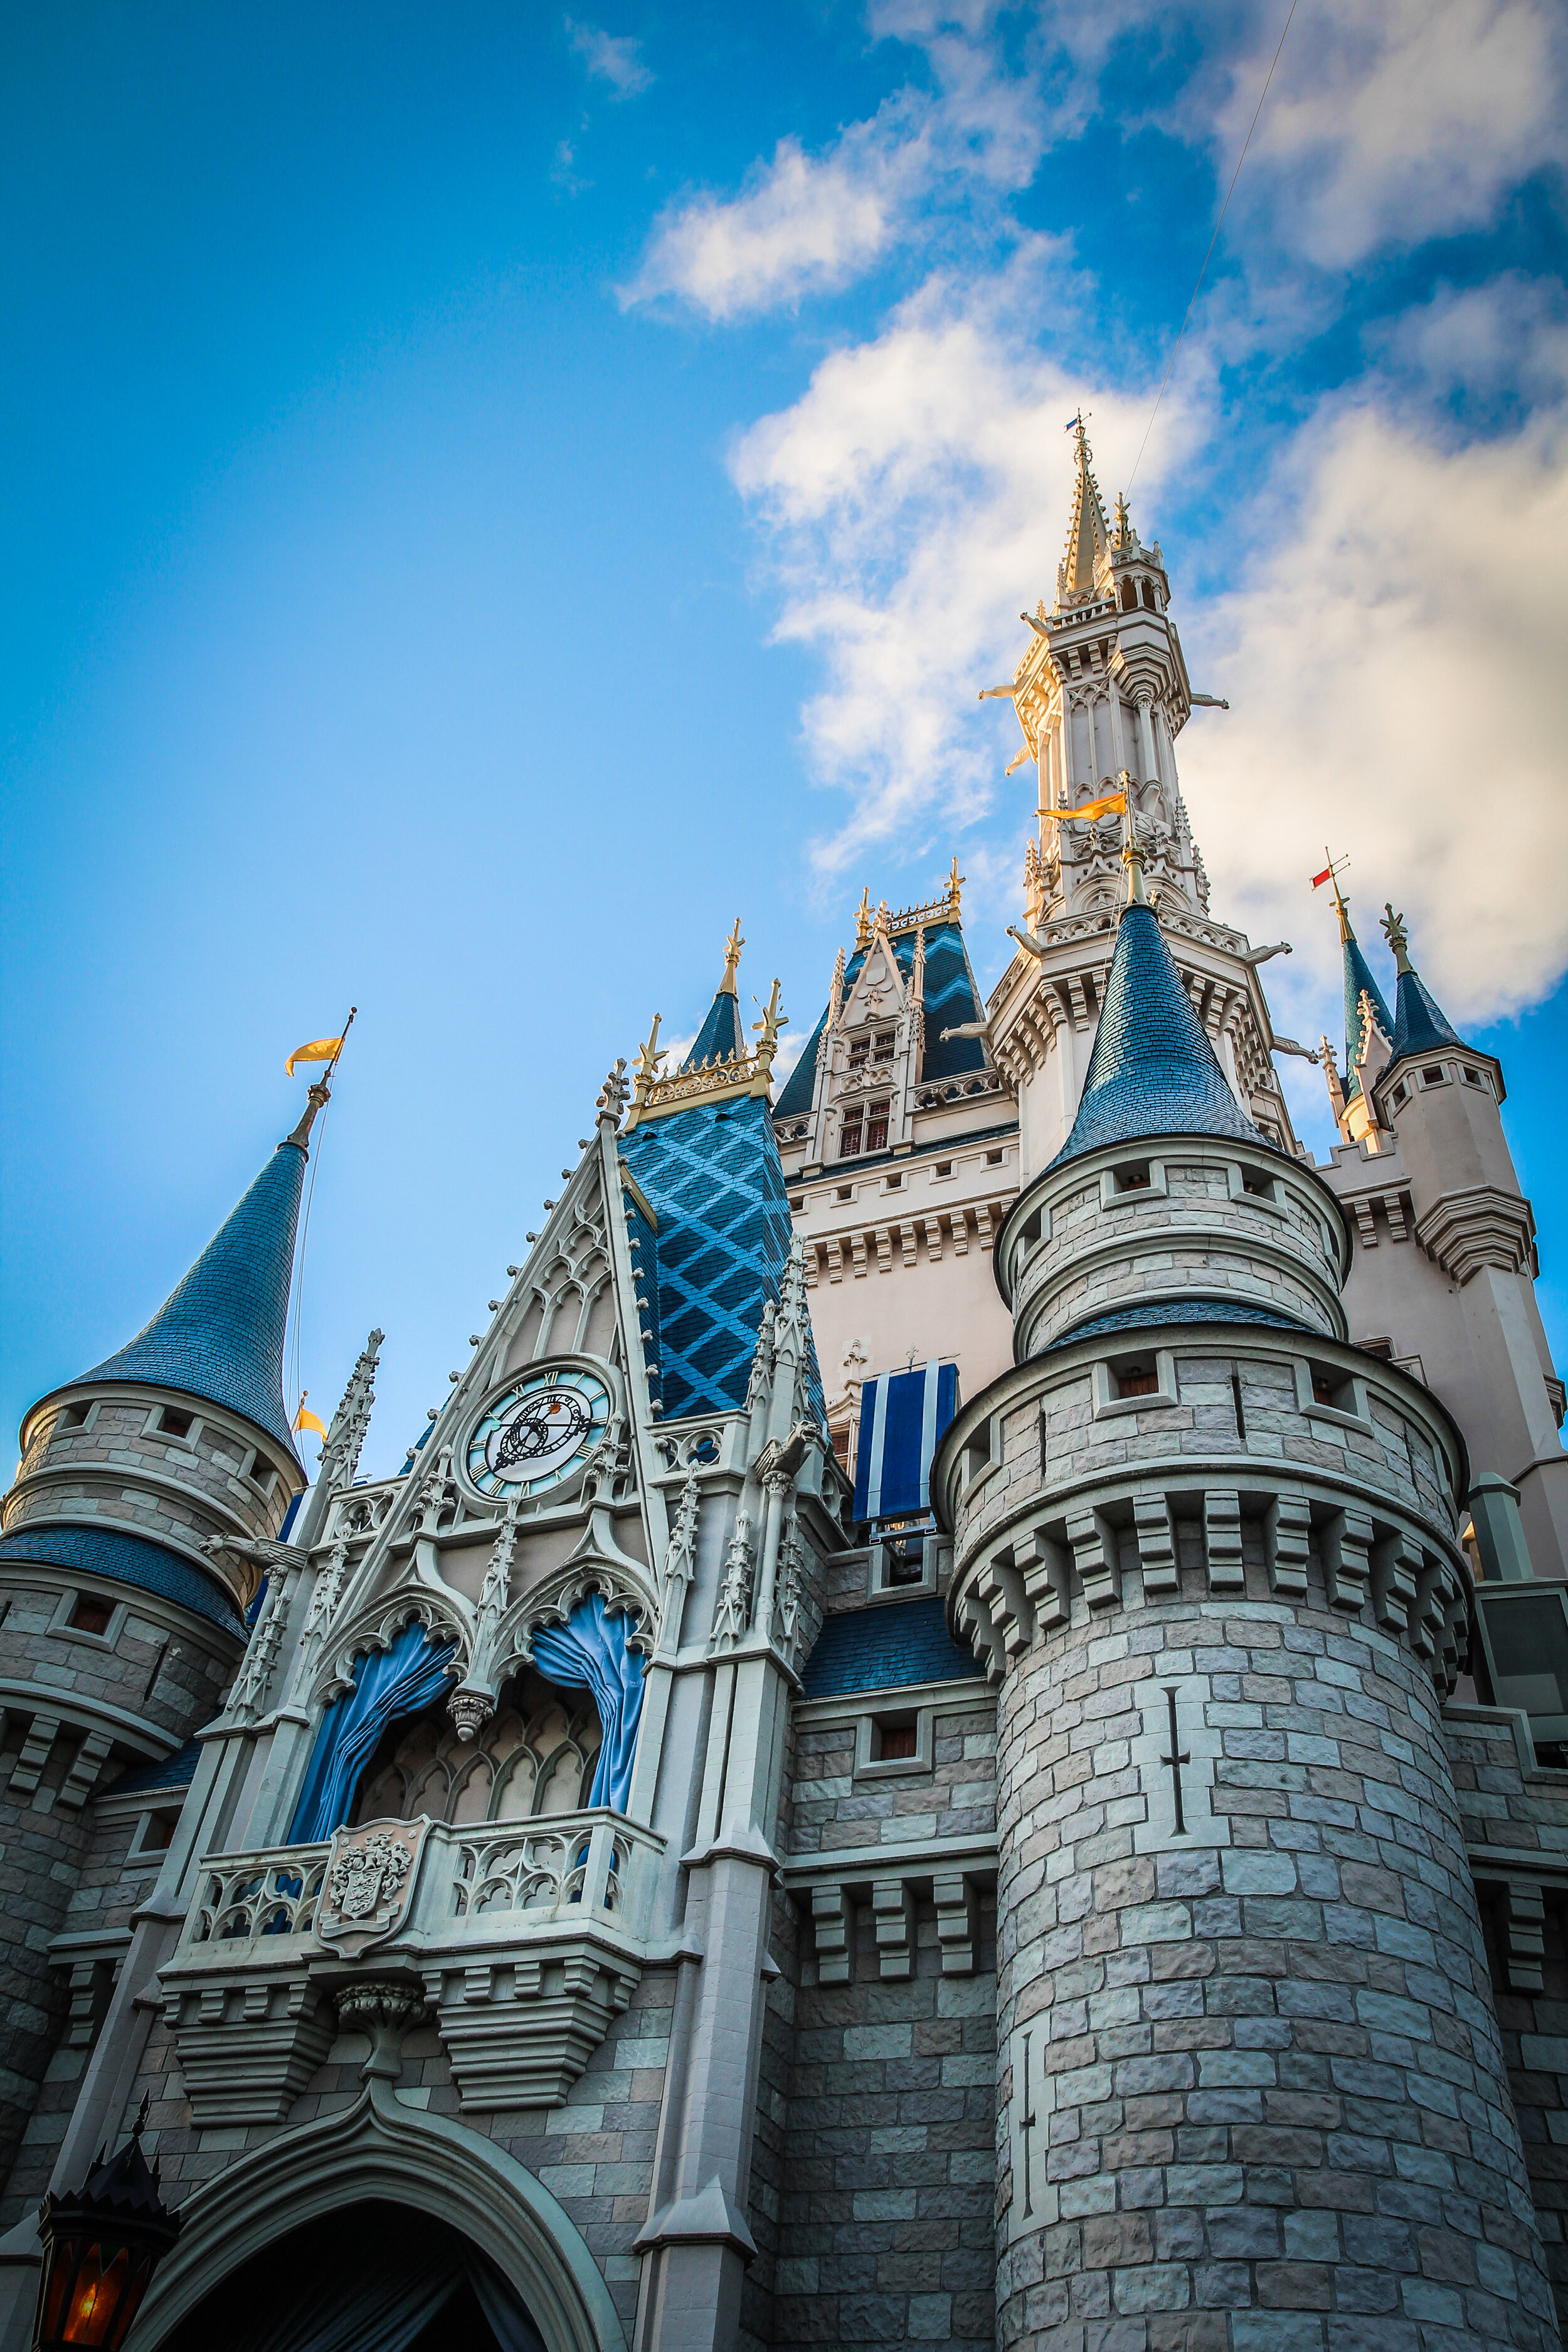 Disney_magical_kingdom_orlando_reizen_met_kinderen-12.jpg